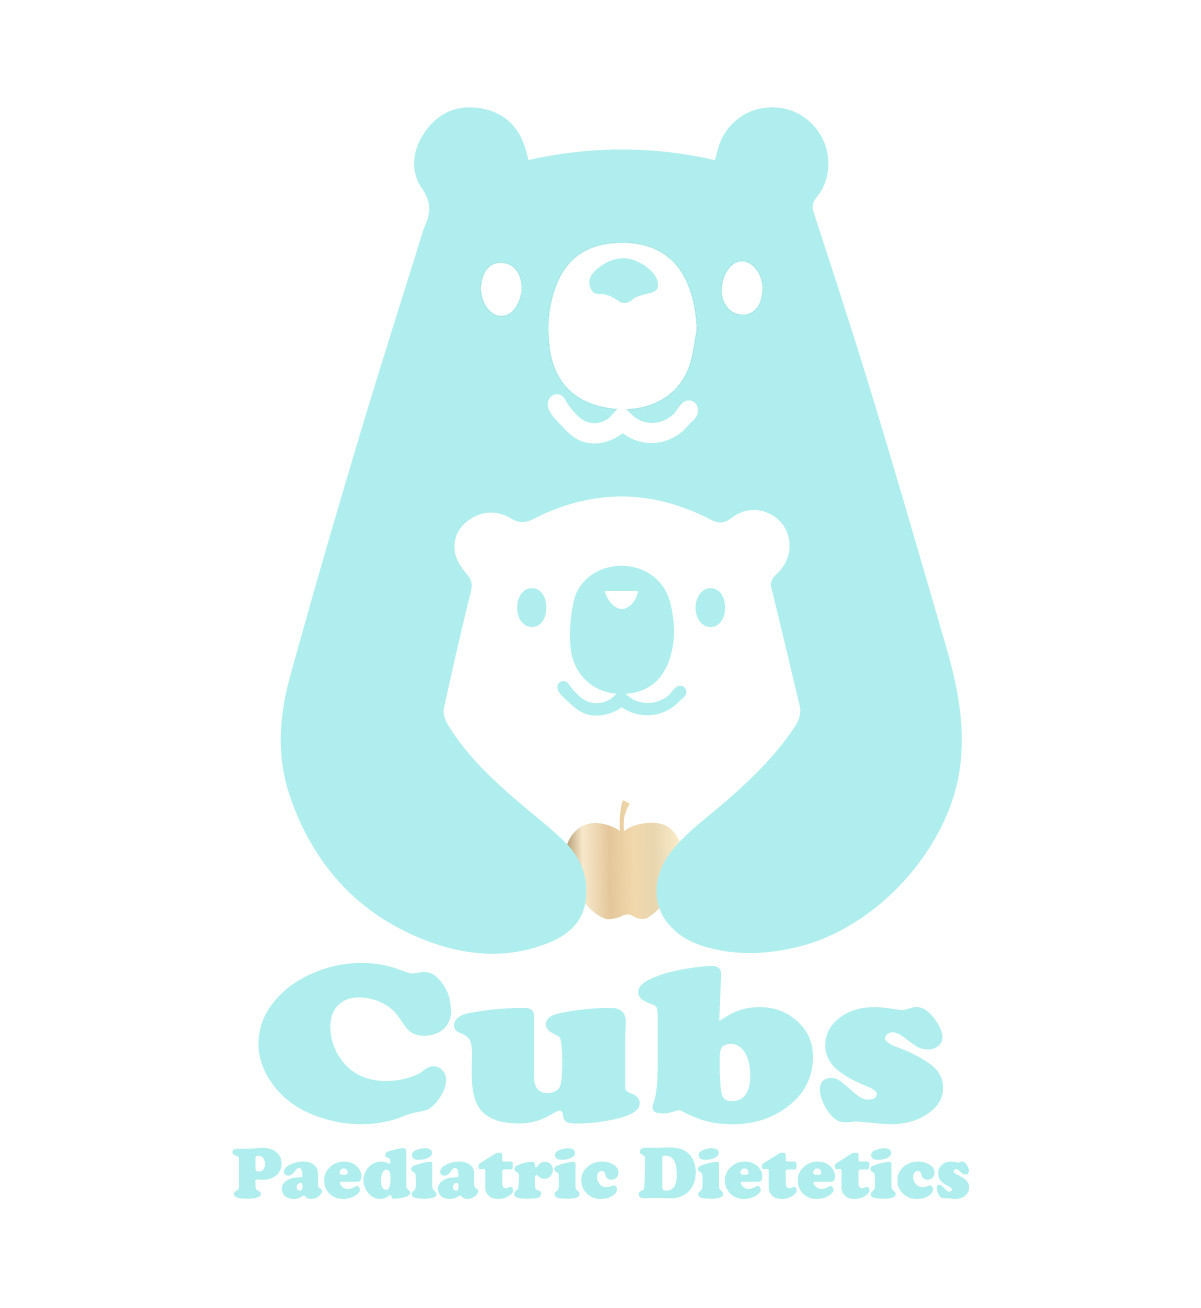 Telehealth Dietitian For Children | Cubs Paediatric Dietetics